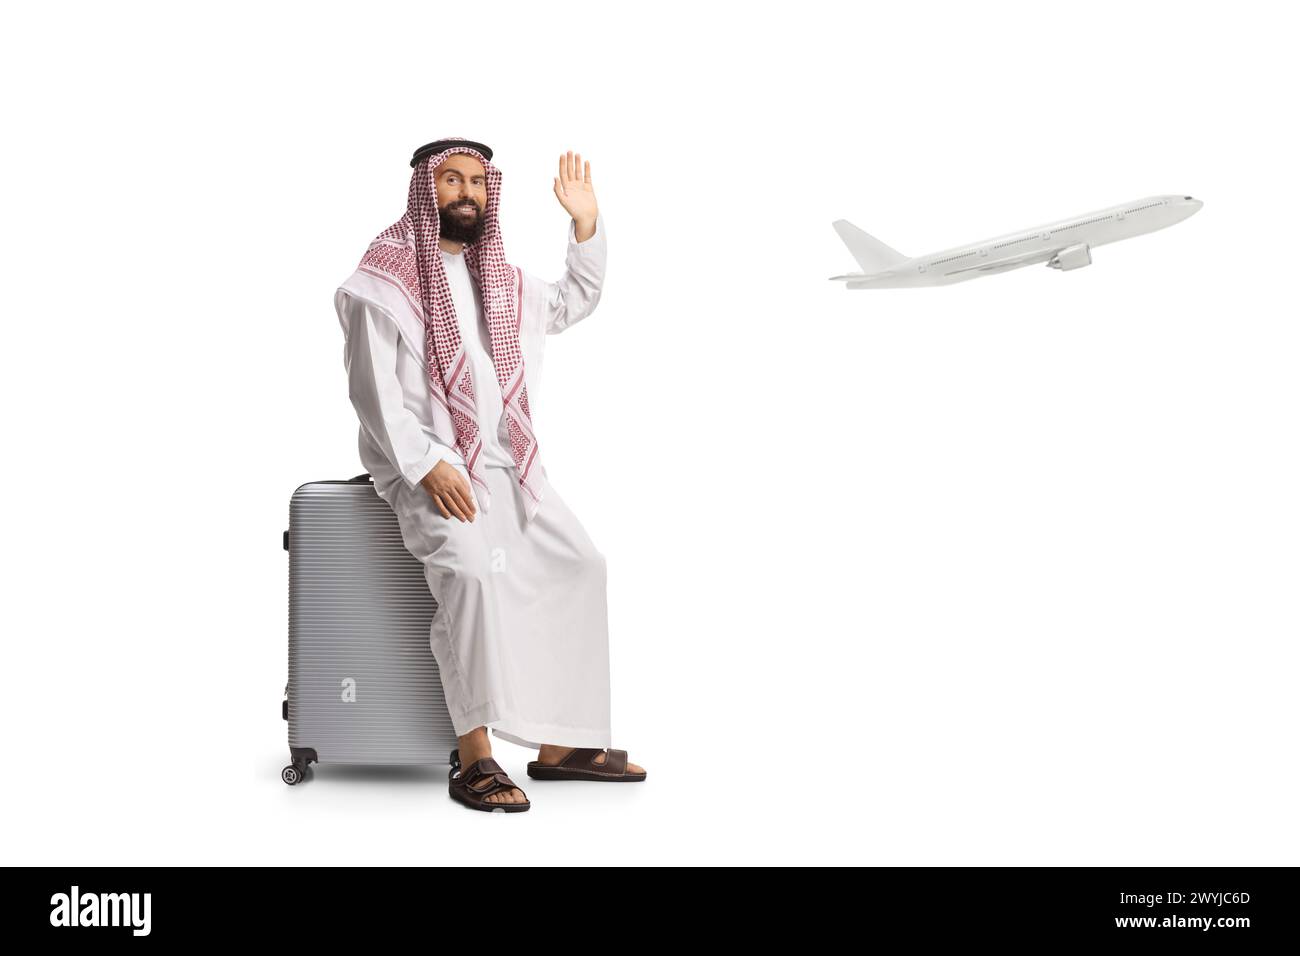 Homme arabe saoudien assis sur une valise à l'aéroport et agitant isolé sur fond blanc, avion volant dans le dos Banque D'Images